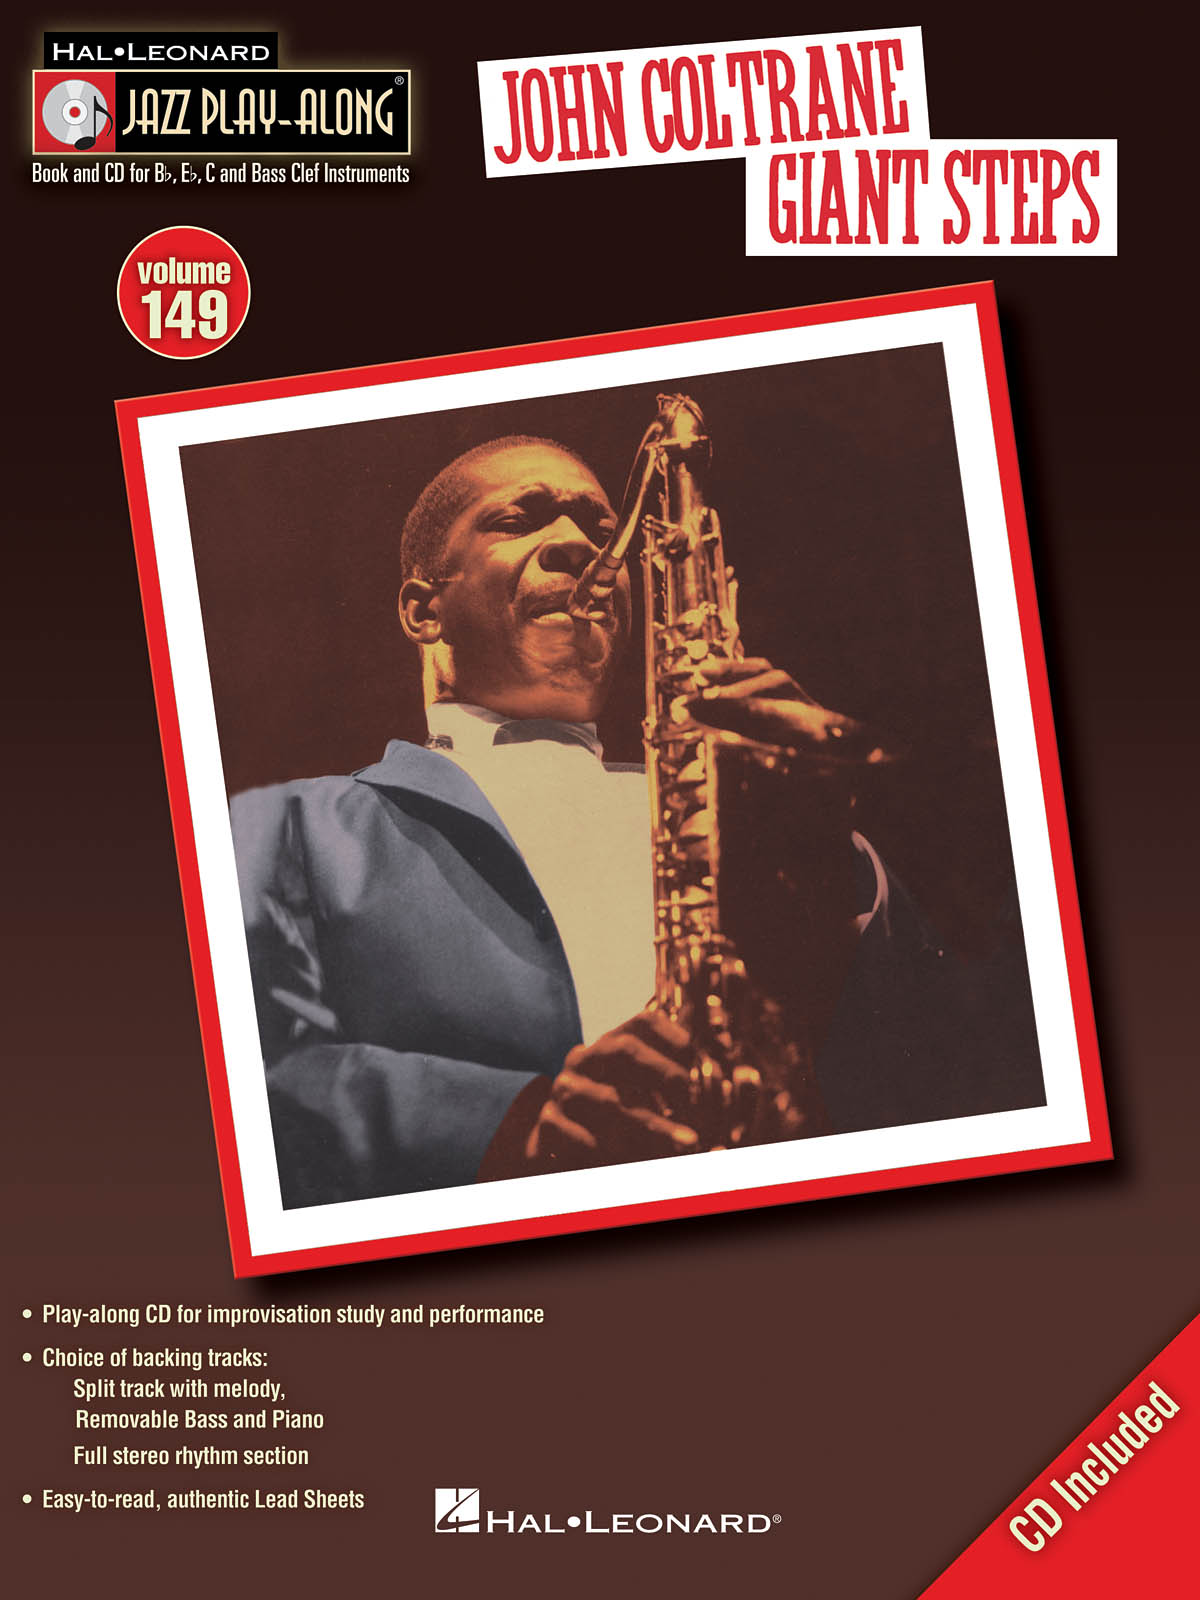 John Coltrane – Giant Steps - Jazz Play-Along Volume 149 - melodie s akordy pro nástroje v ladění C